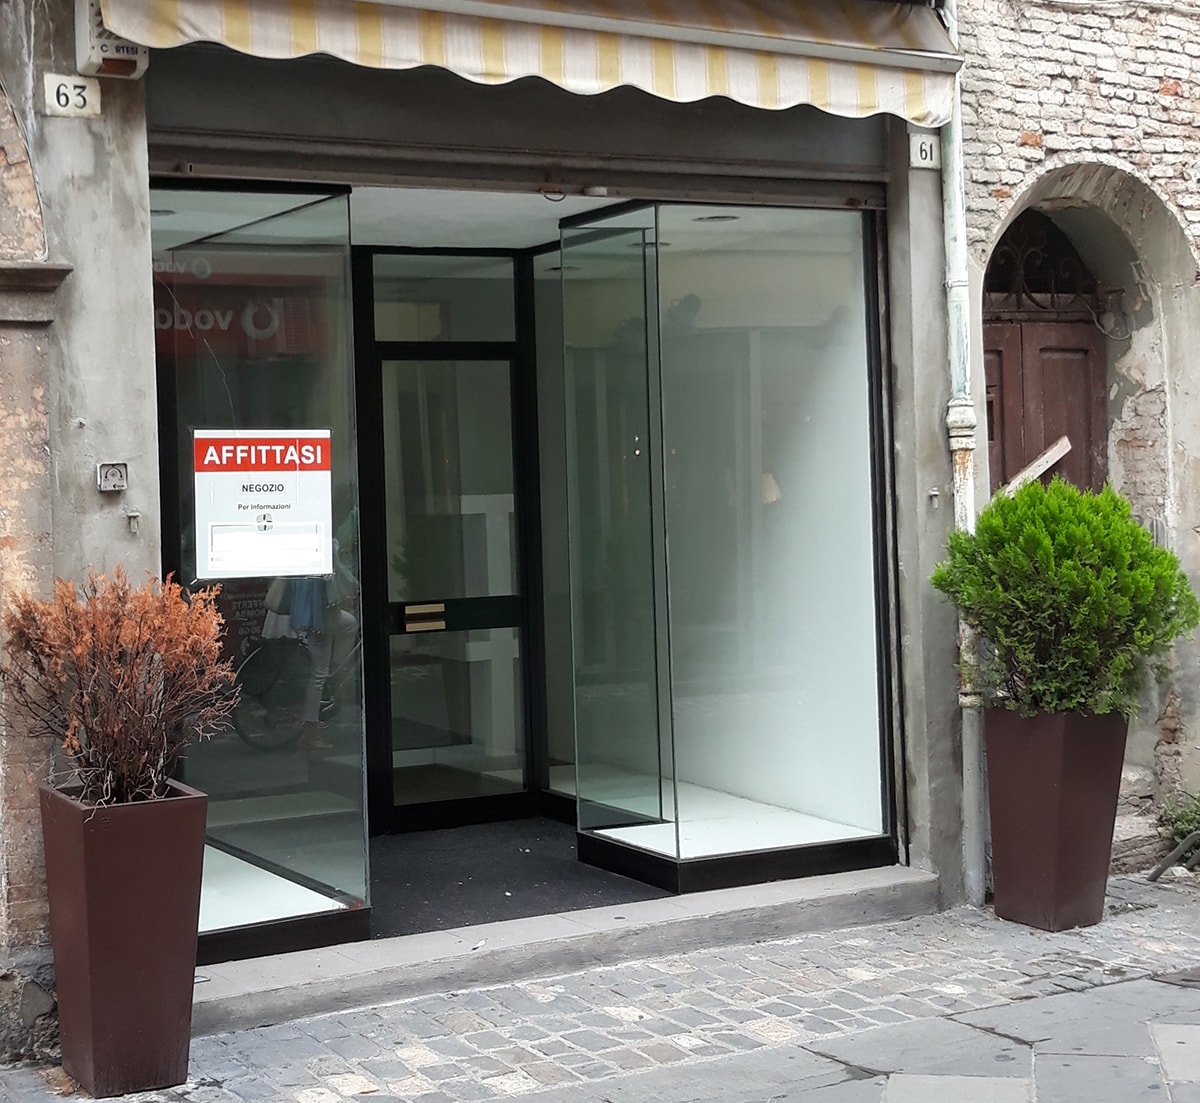 Nel 2018 chiusi 435 negozi in provincia di Rimini